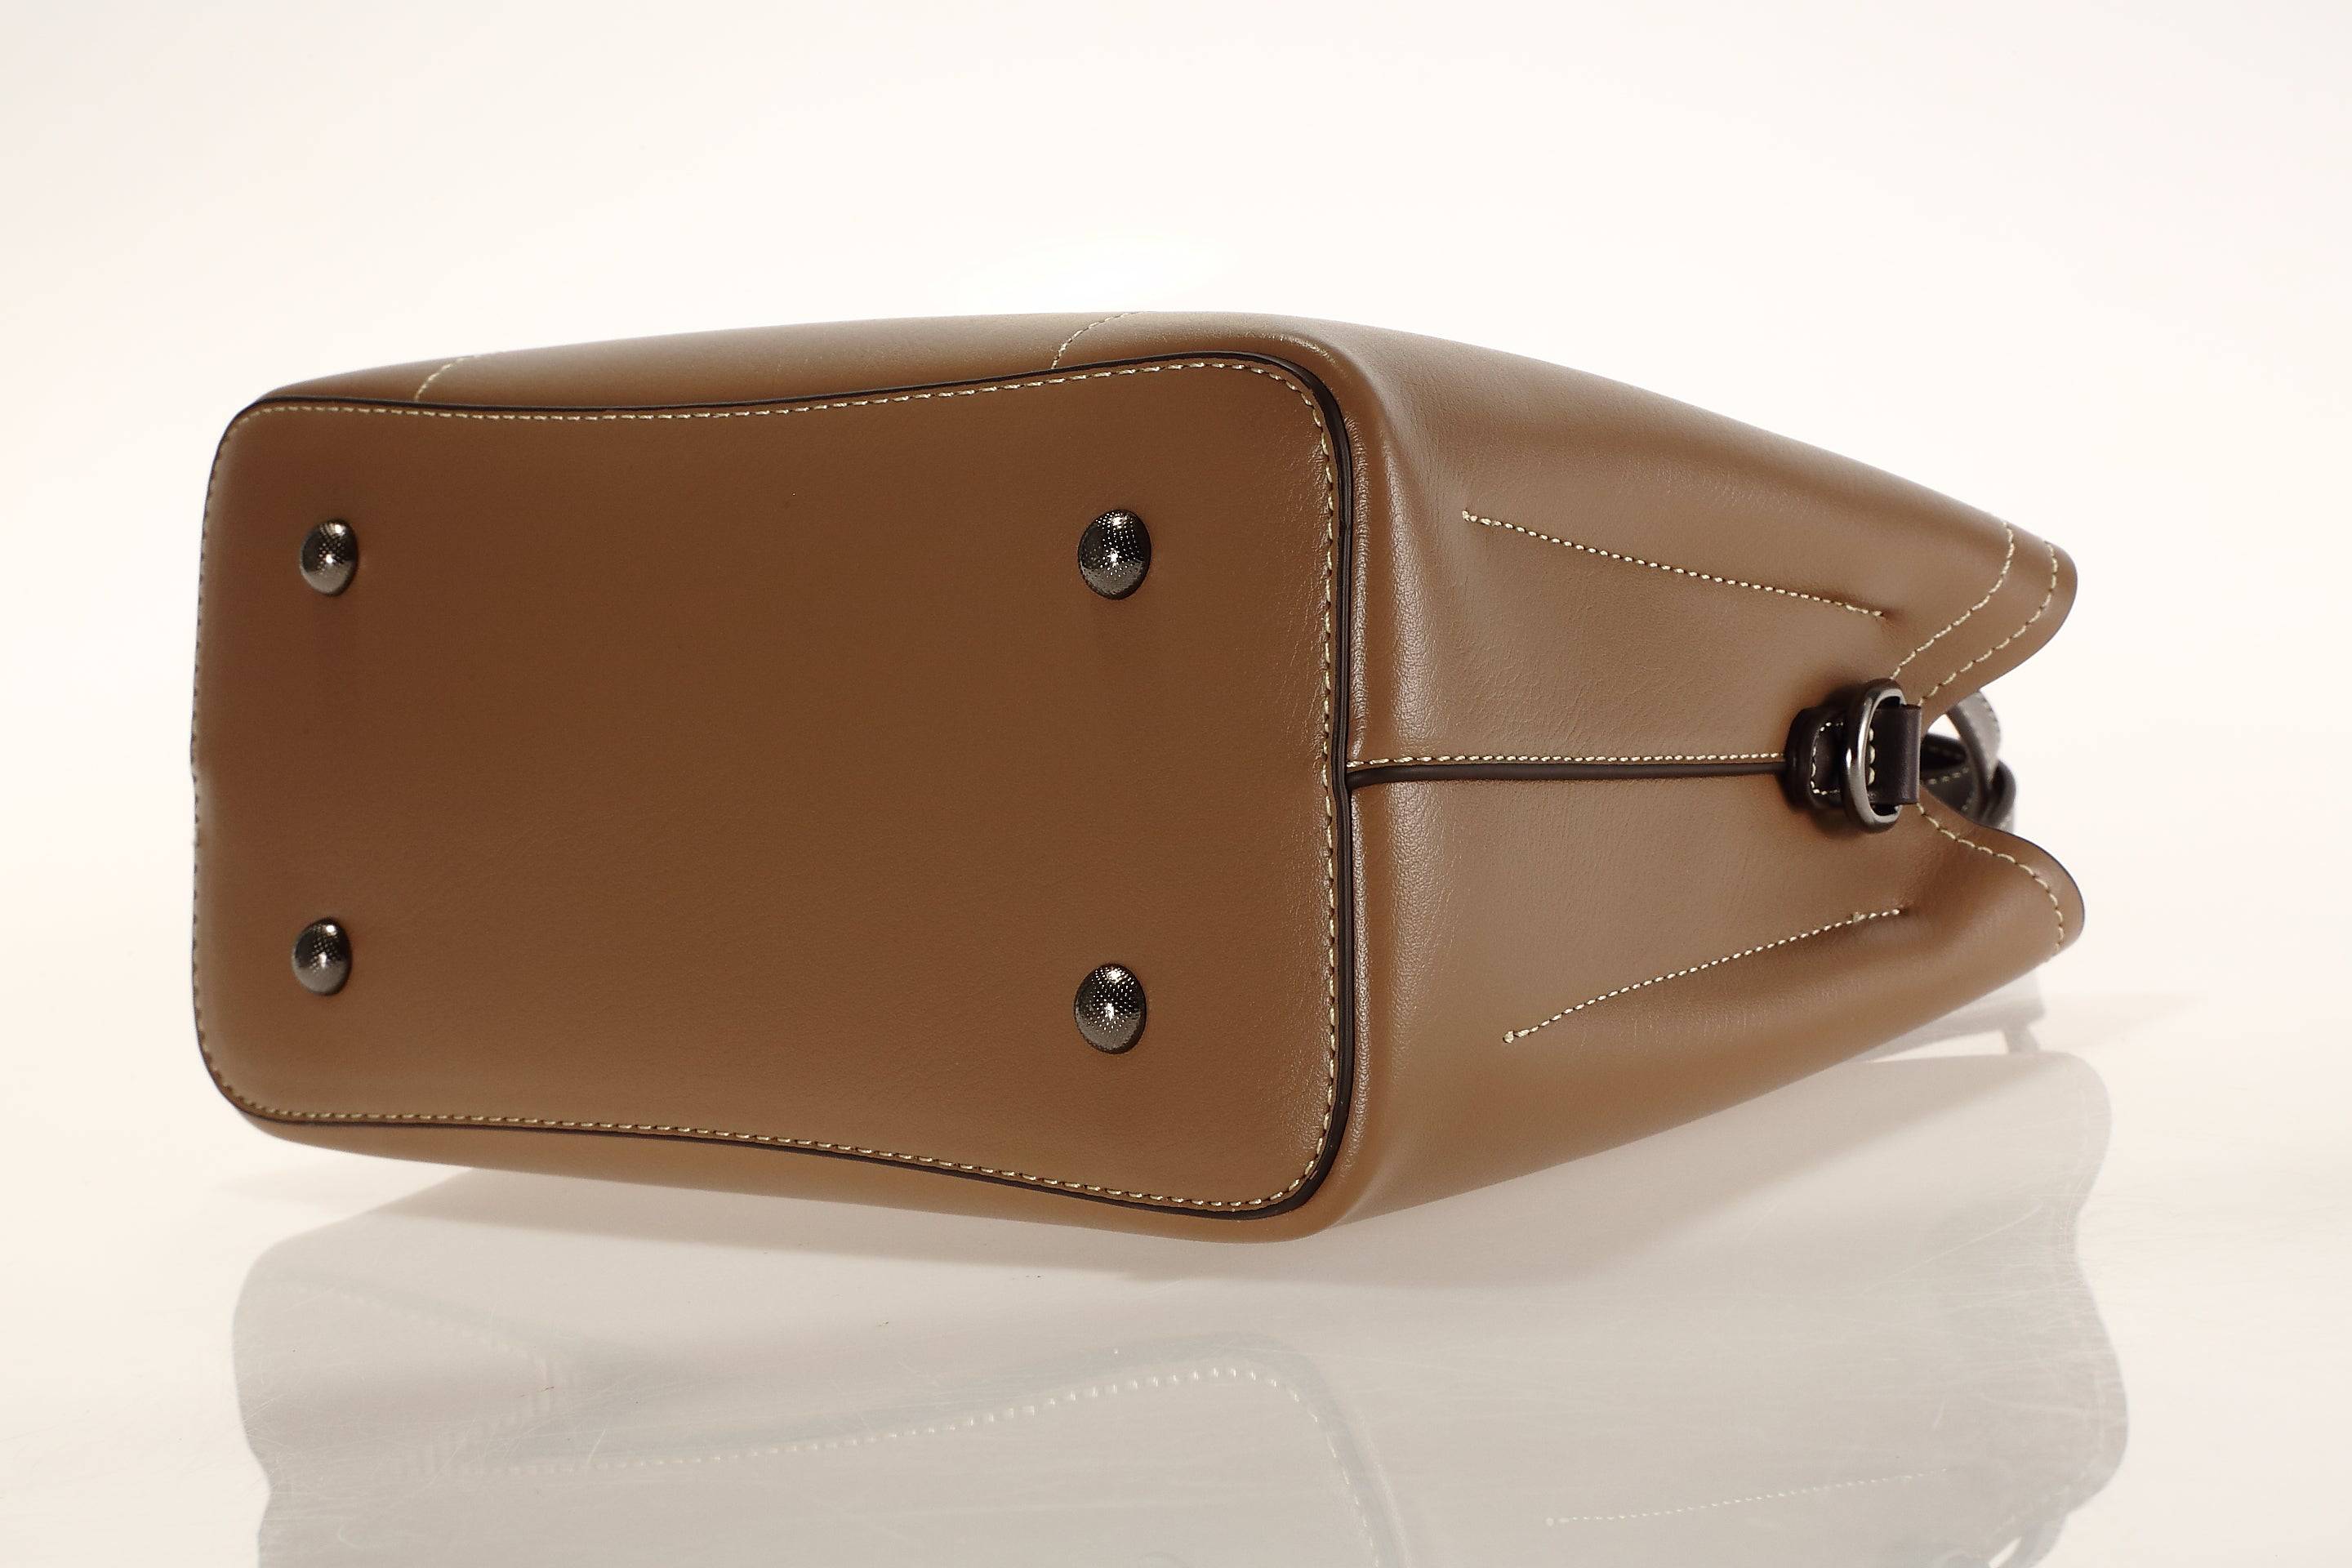 حقيبة يد باللون الاسود مربعة الشكل كبيرة الحجم مع حزام طويل للكتف - KSA